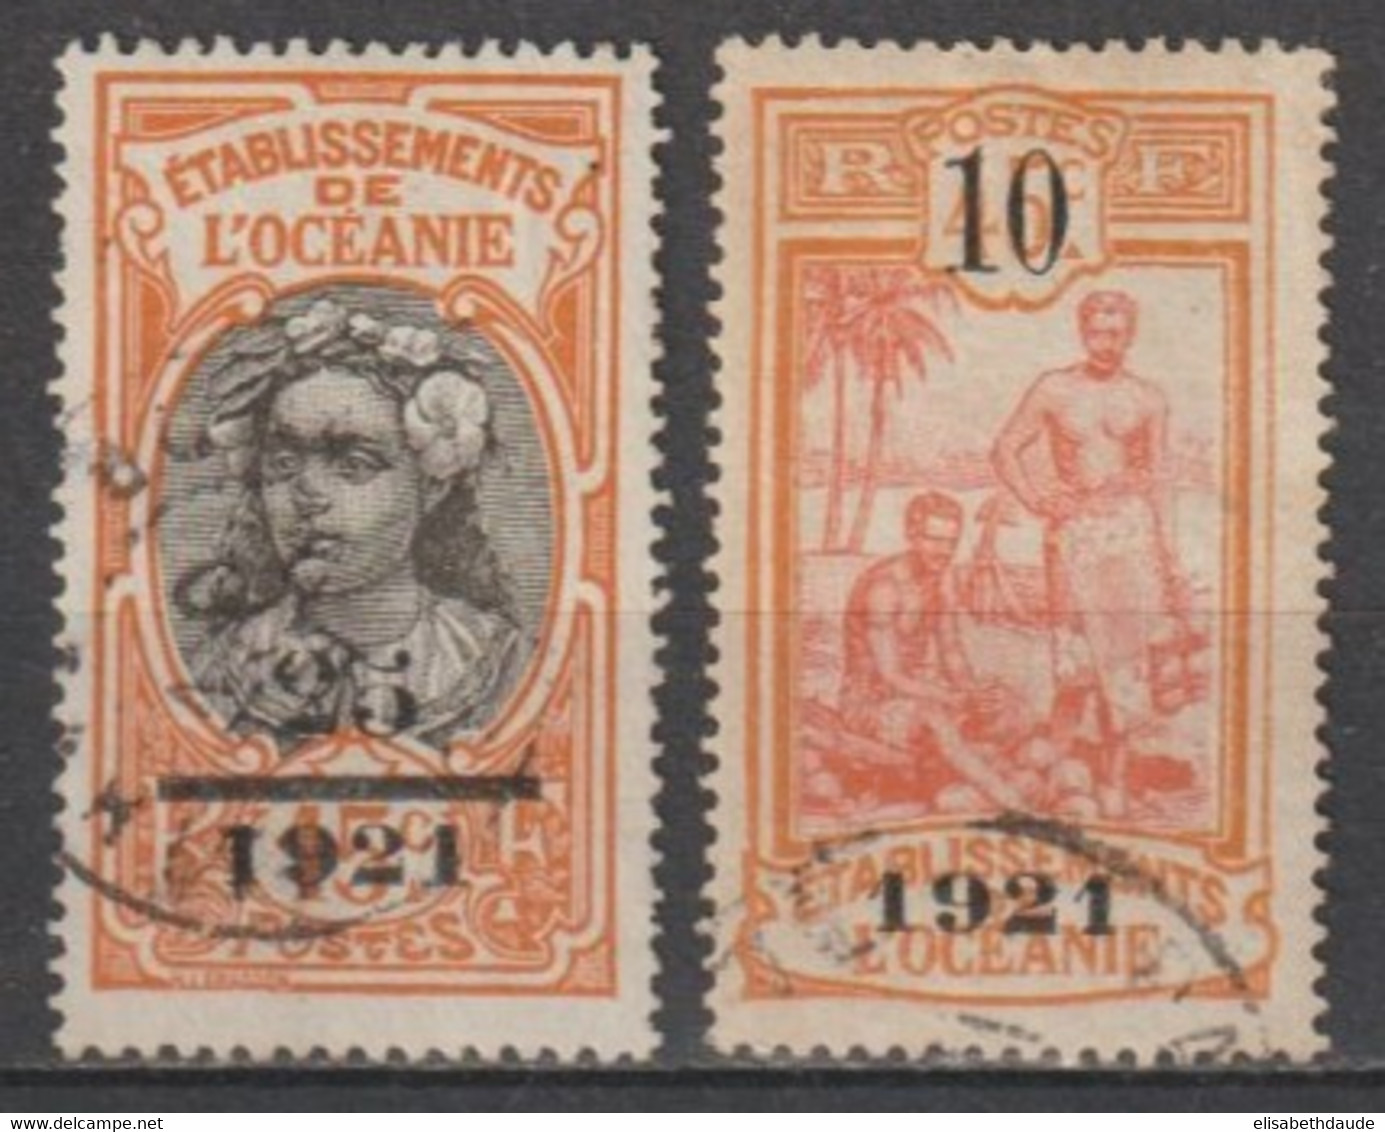 OCEANIE - 1921 - YVERT N°45/46 OBLITERES - COTE = 90 EUR - Usados